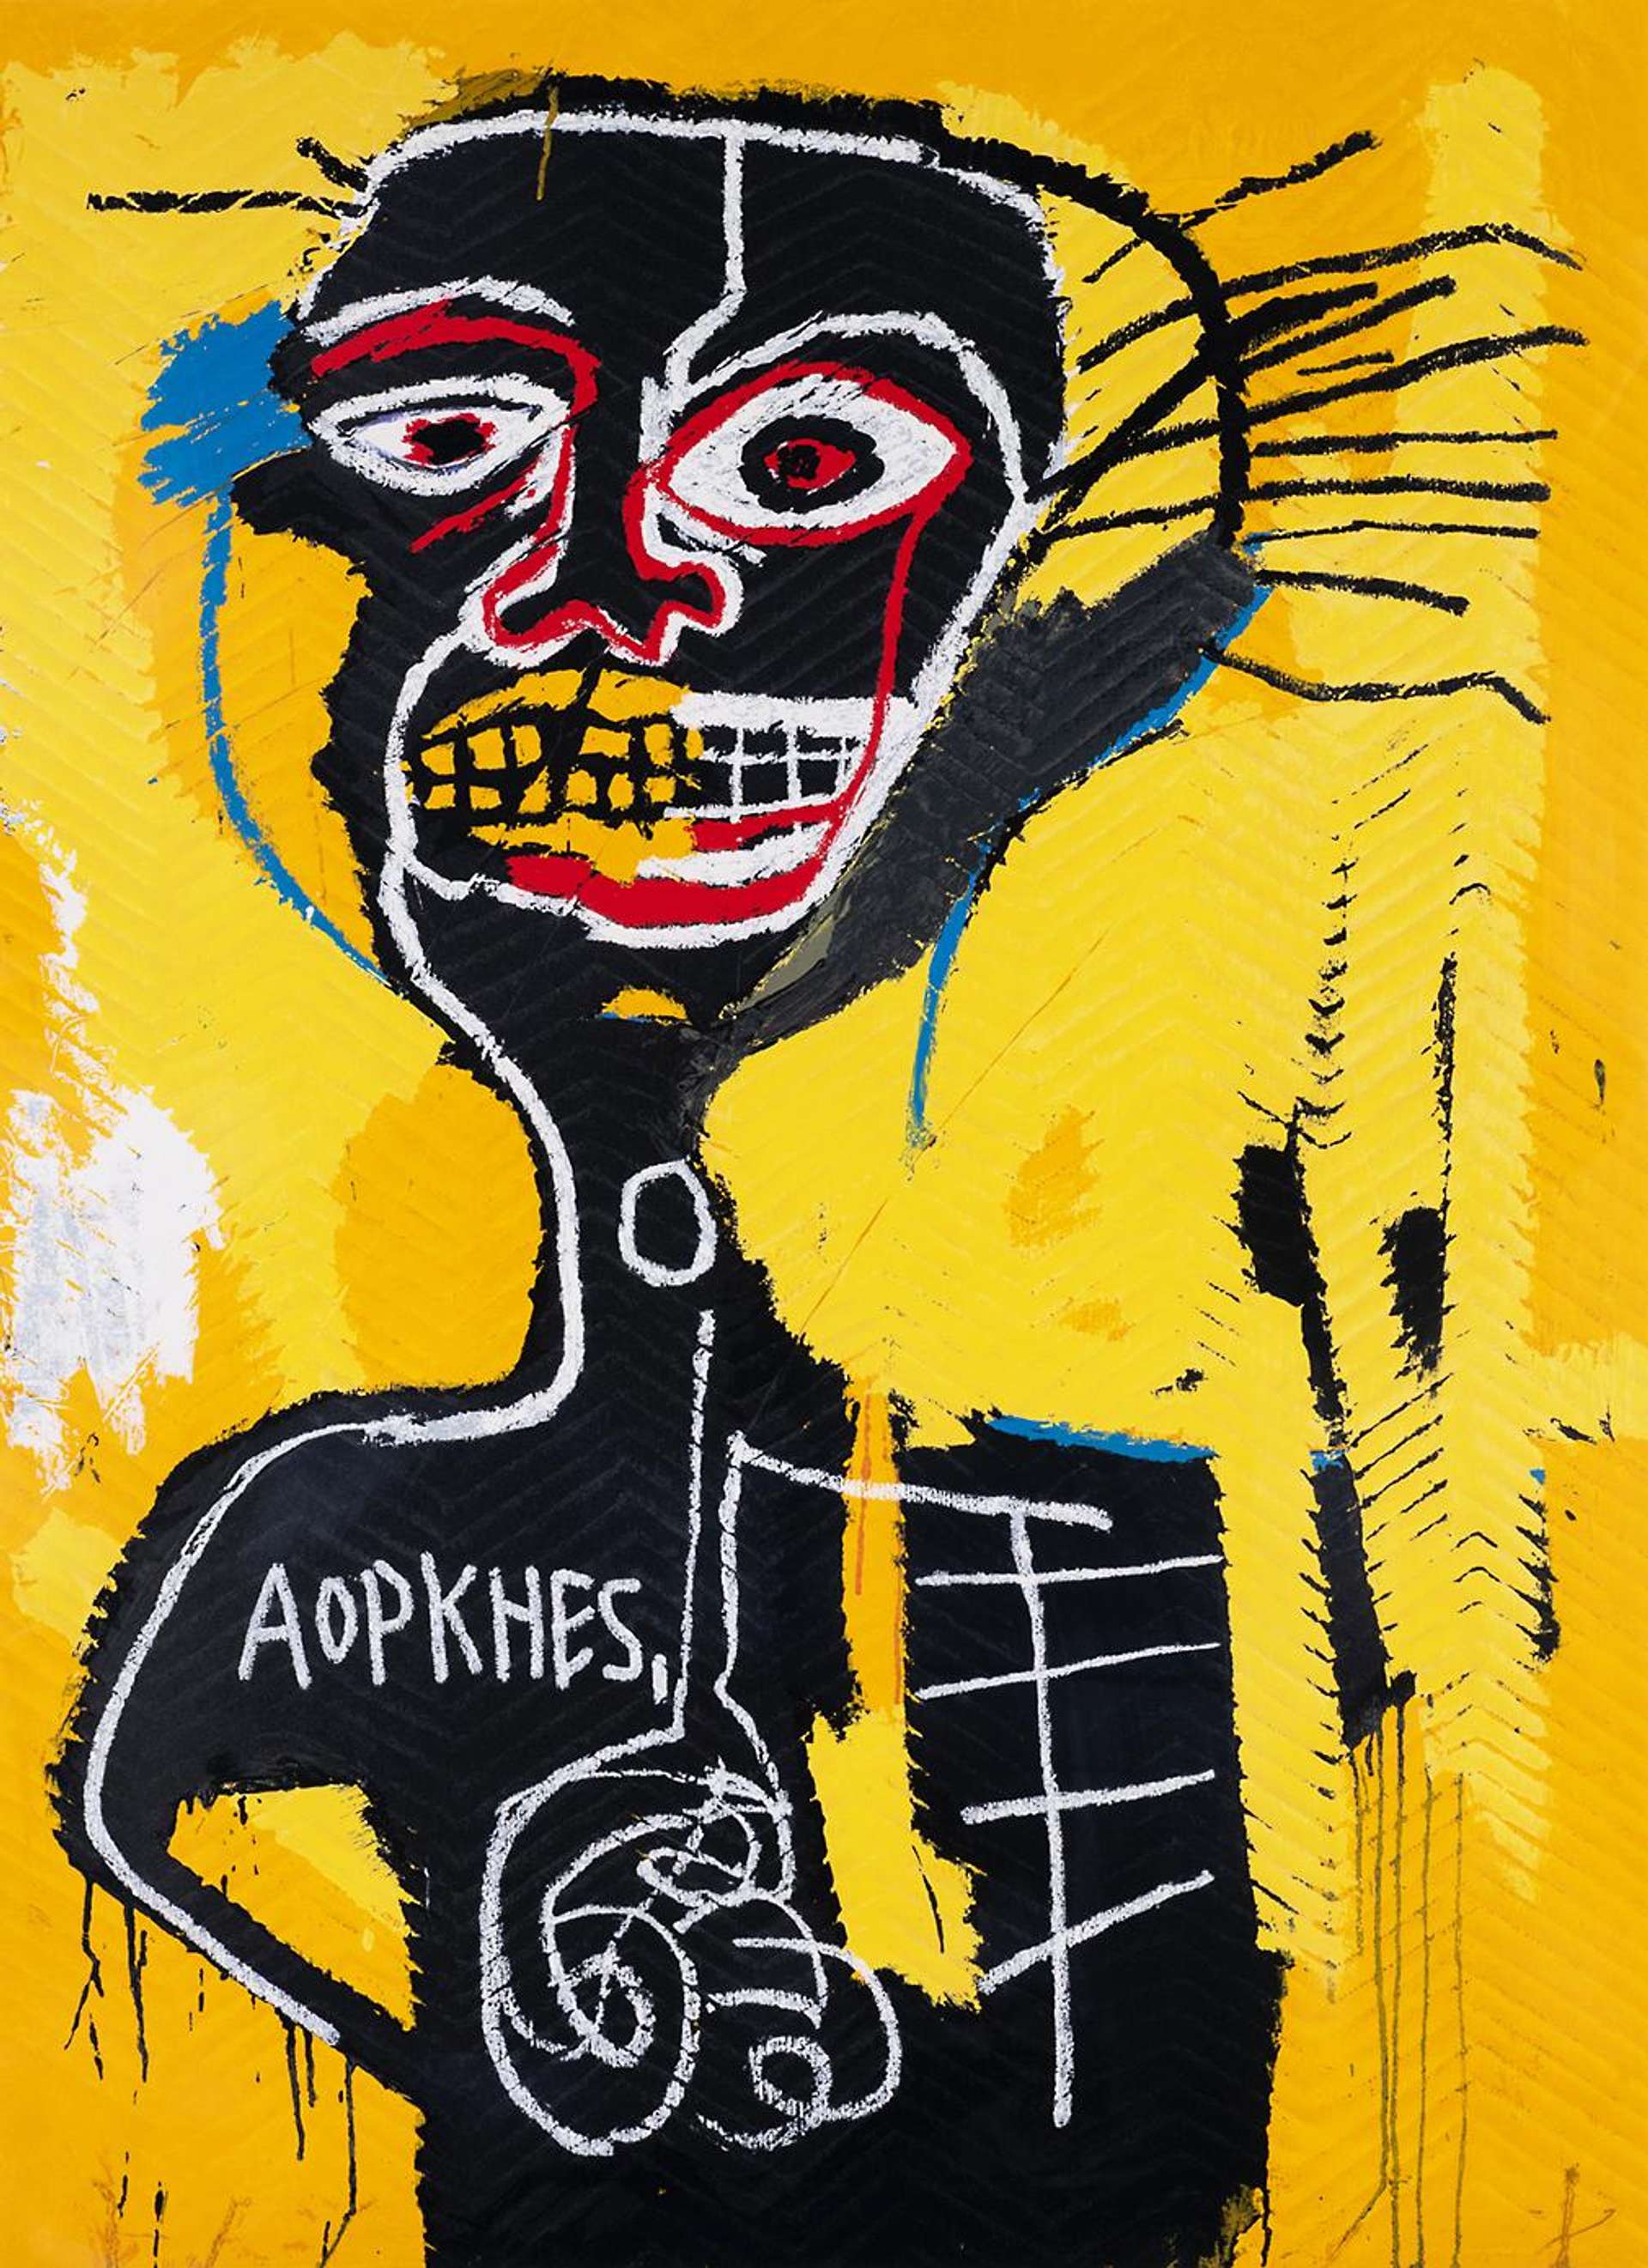 Cabeza by Jean Michel Basquiat - MyArtBroker